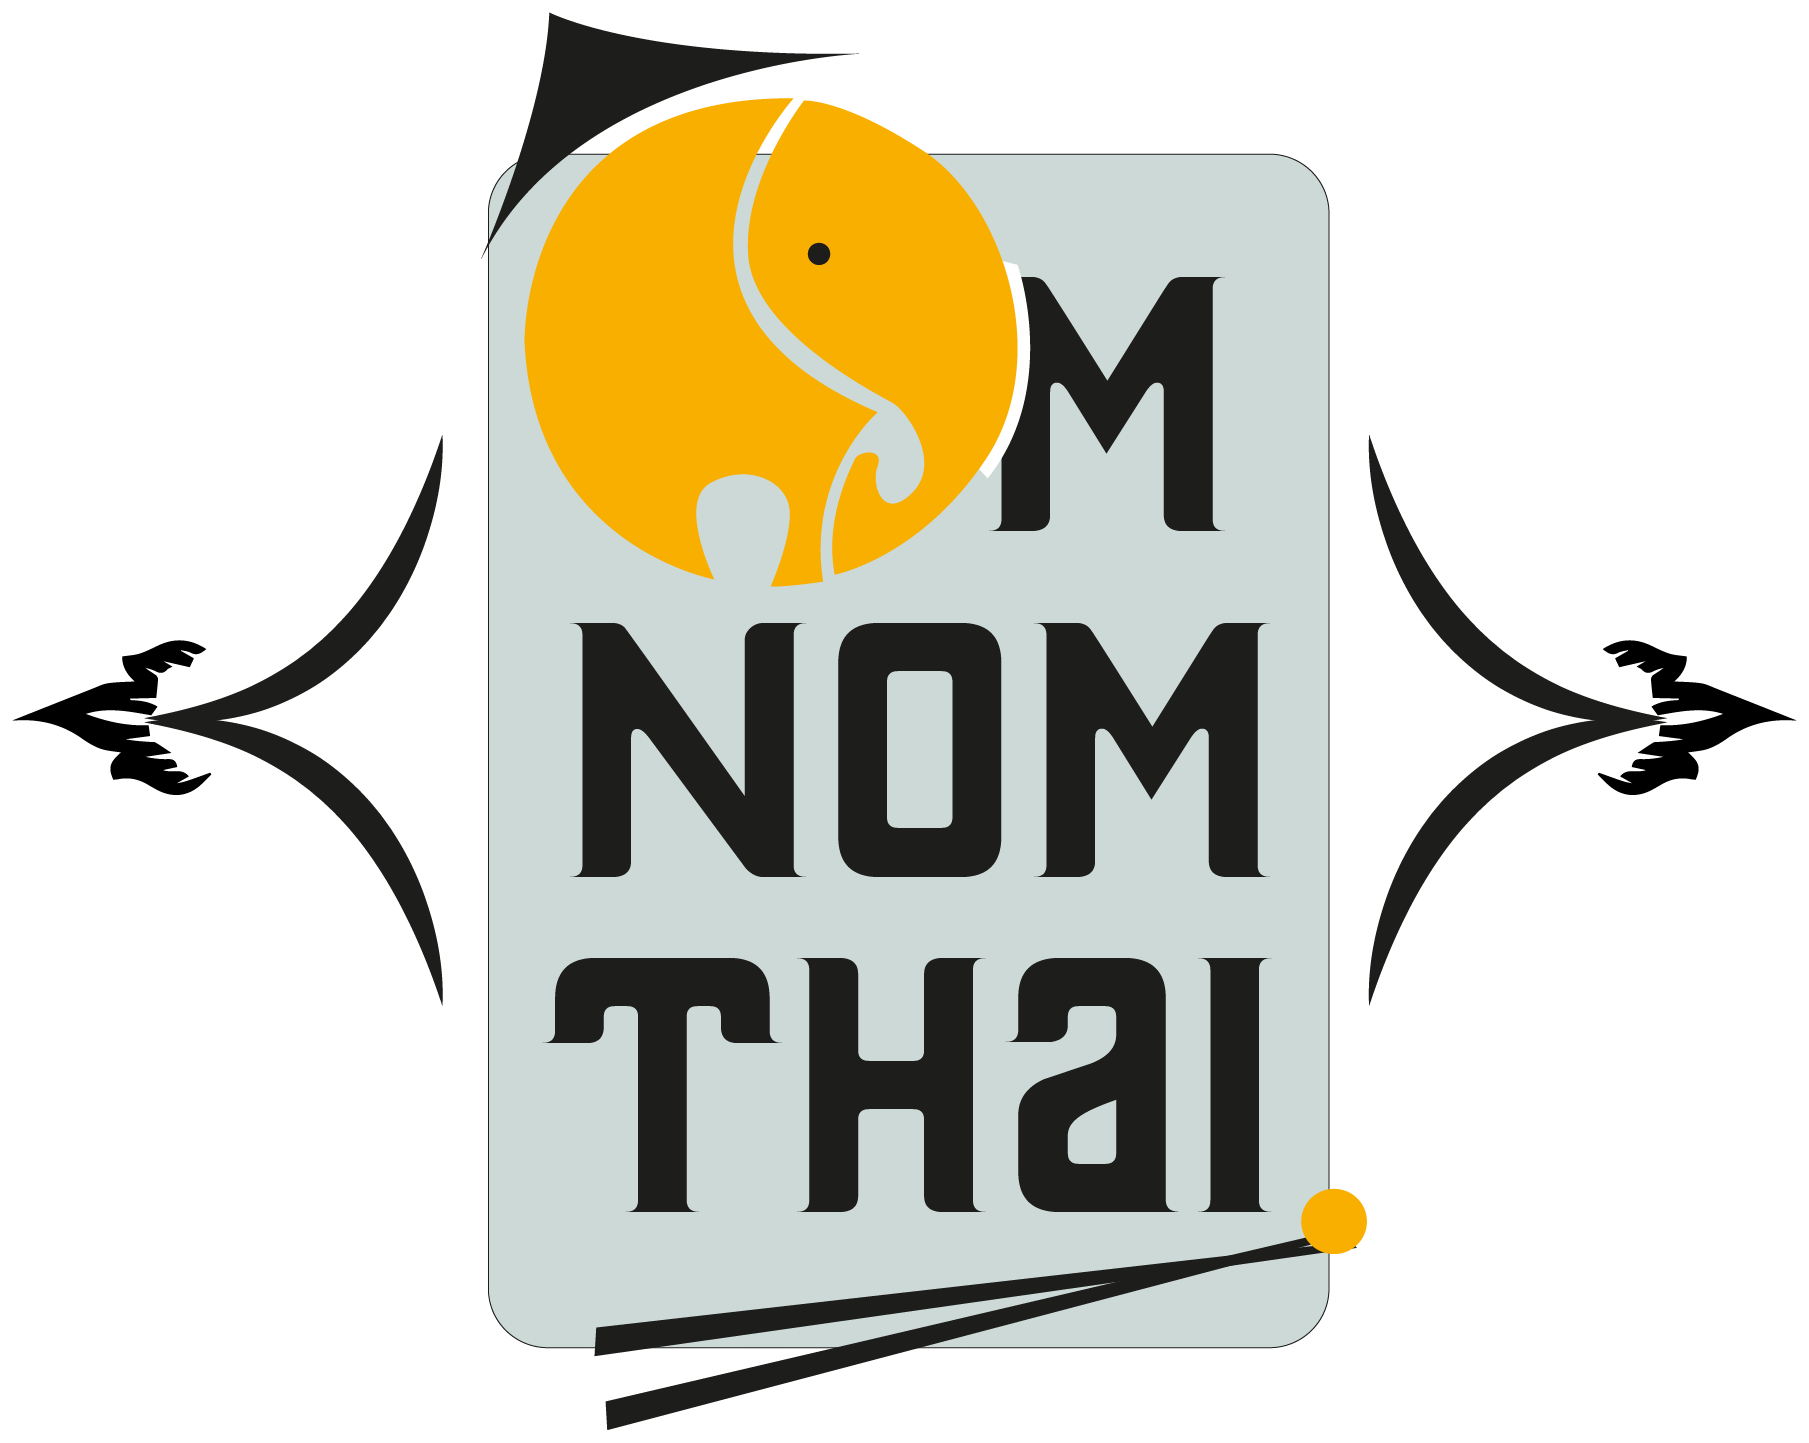 Lunch Menu Om Nom Thai Food Truck - Lunch (1809x1443)